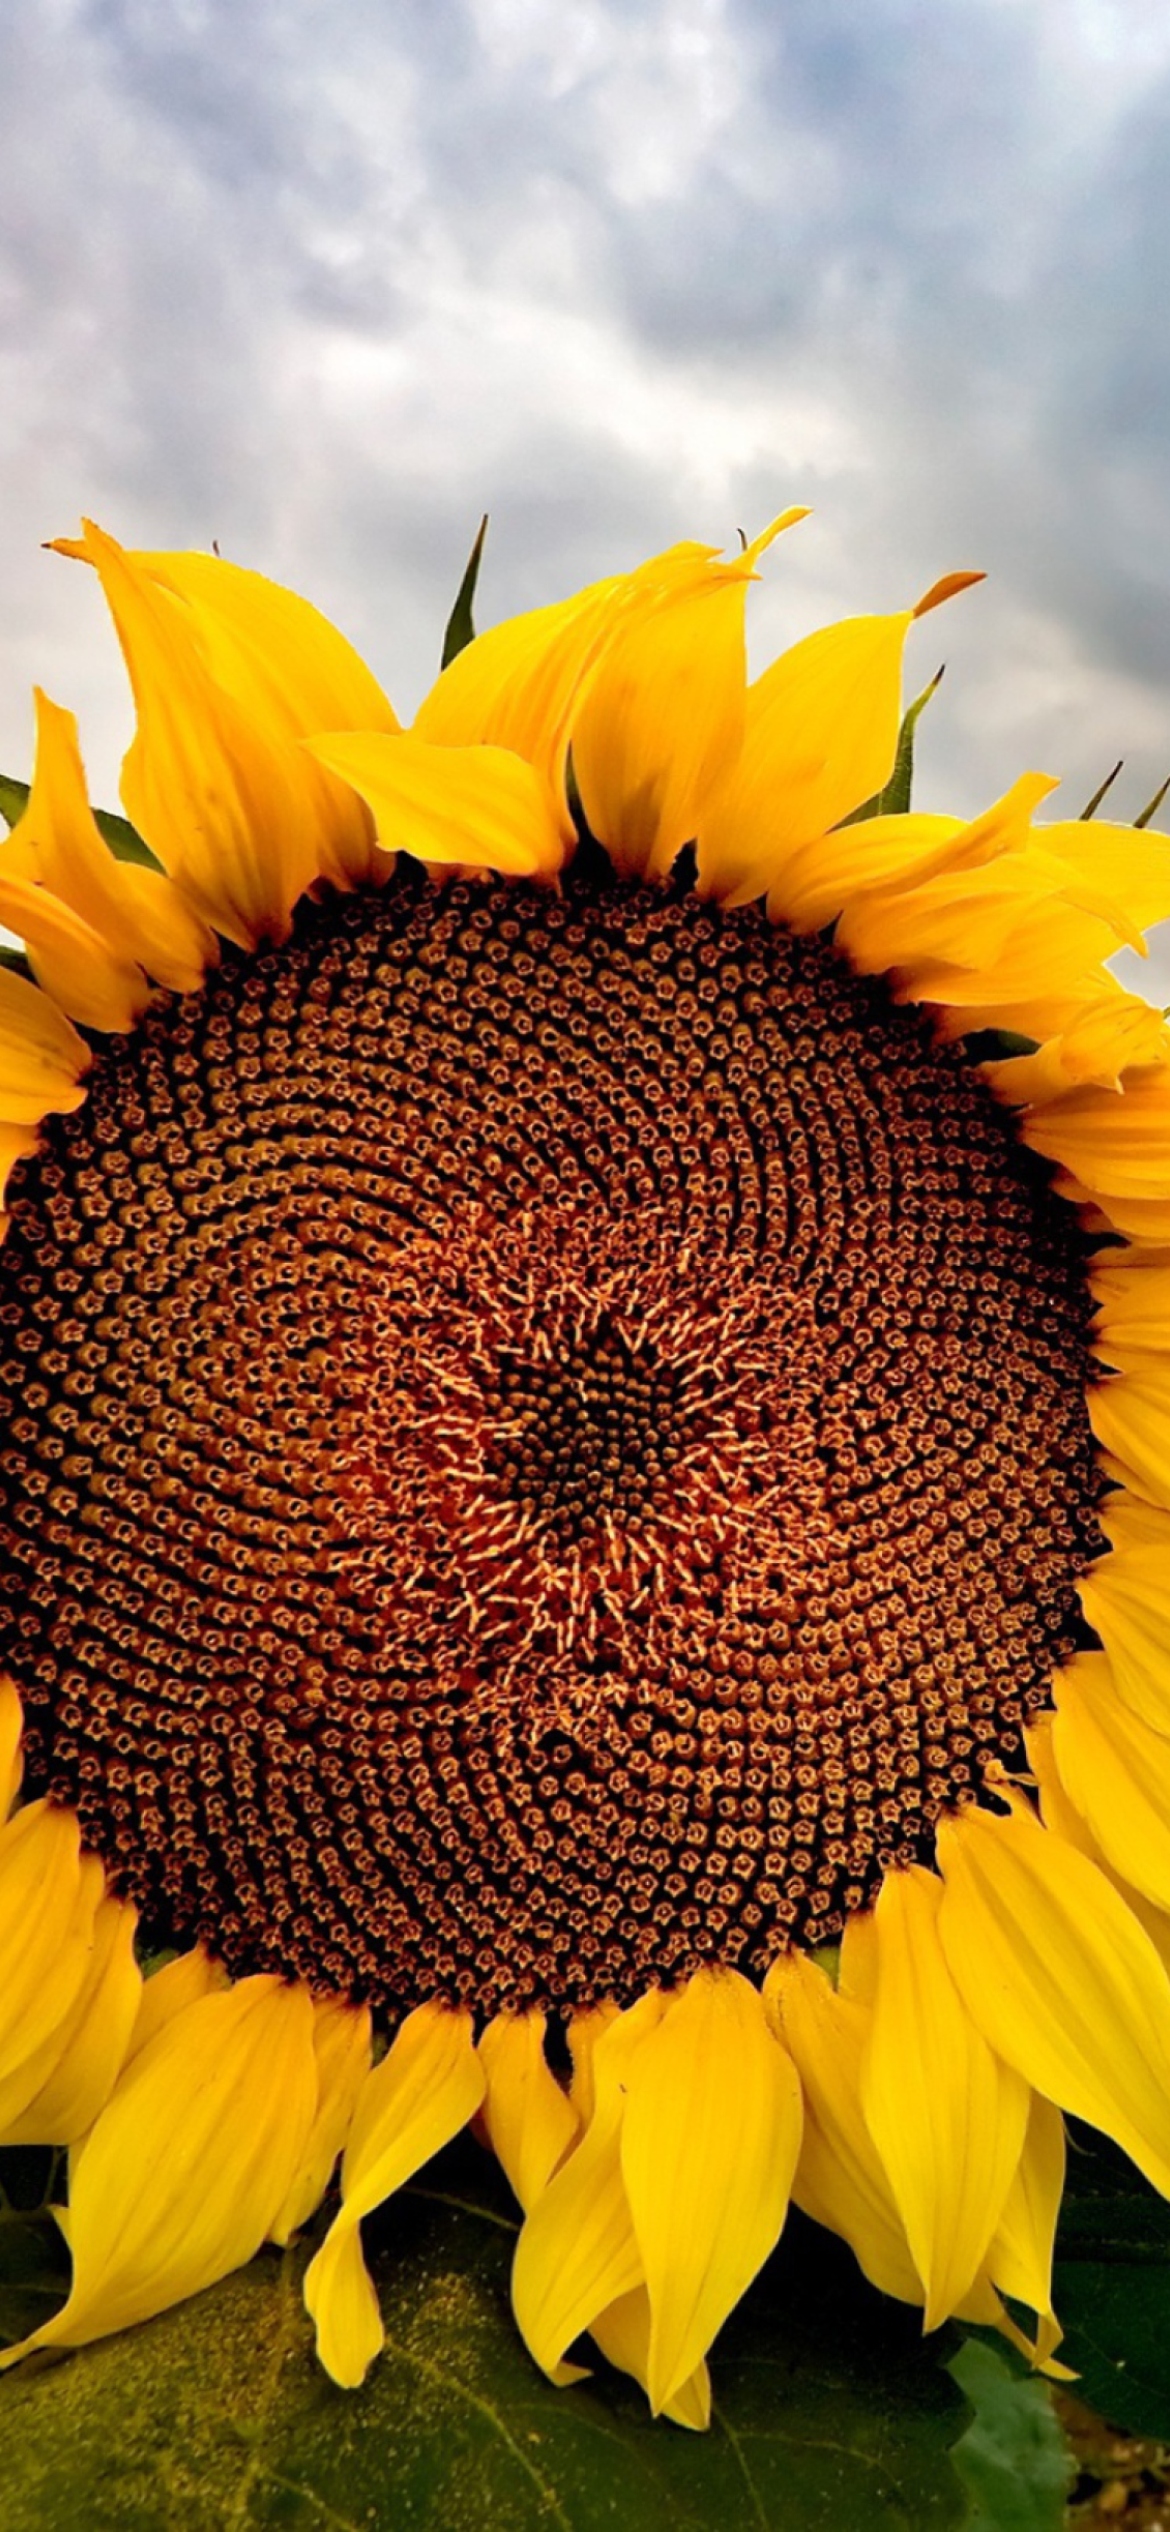 Sunflower wallpaper 1170x2532